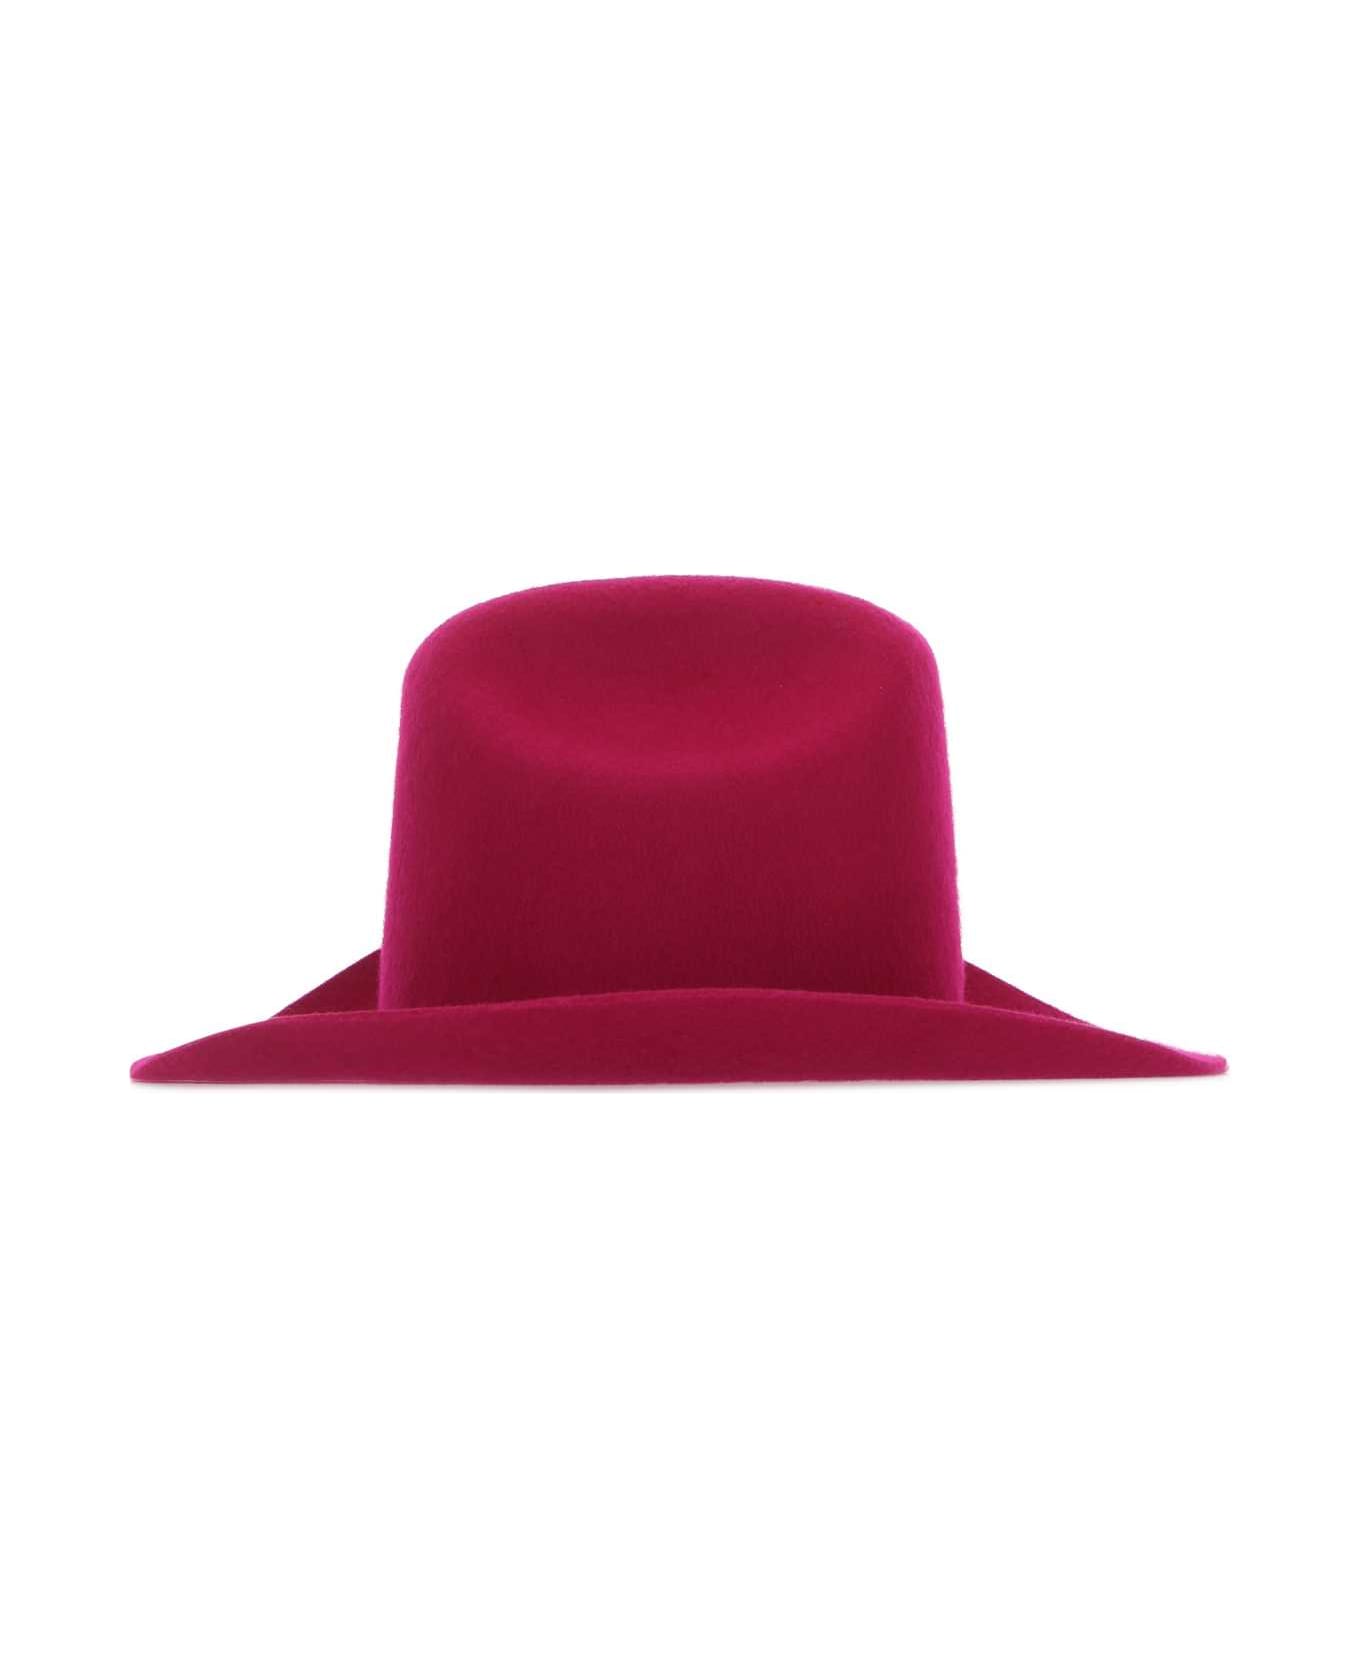 Ruslan Baginskiy Tyrian Purple Felt Hat - PINK